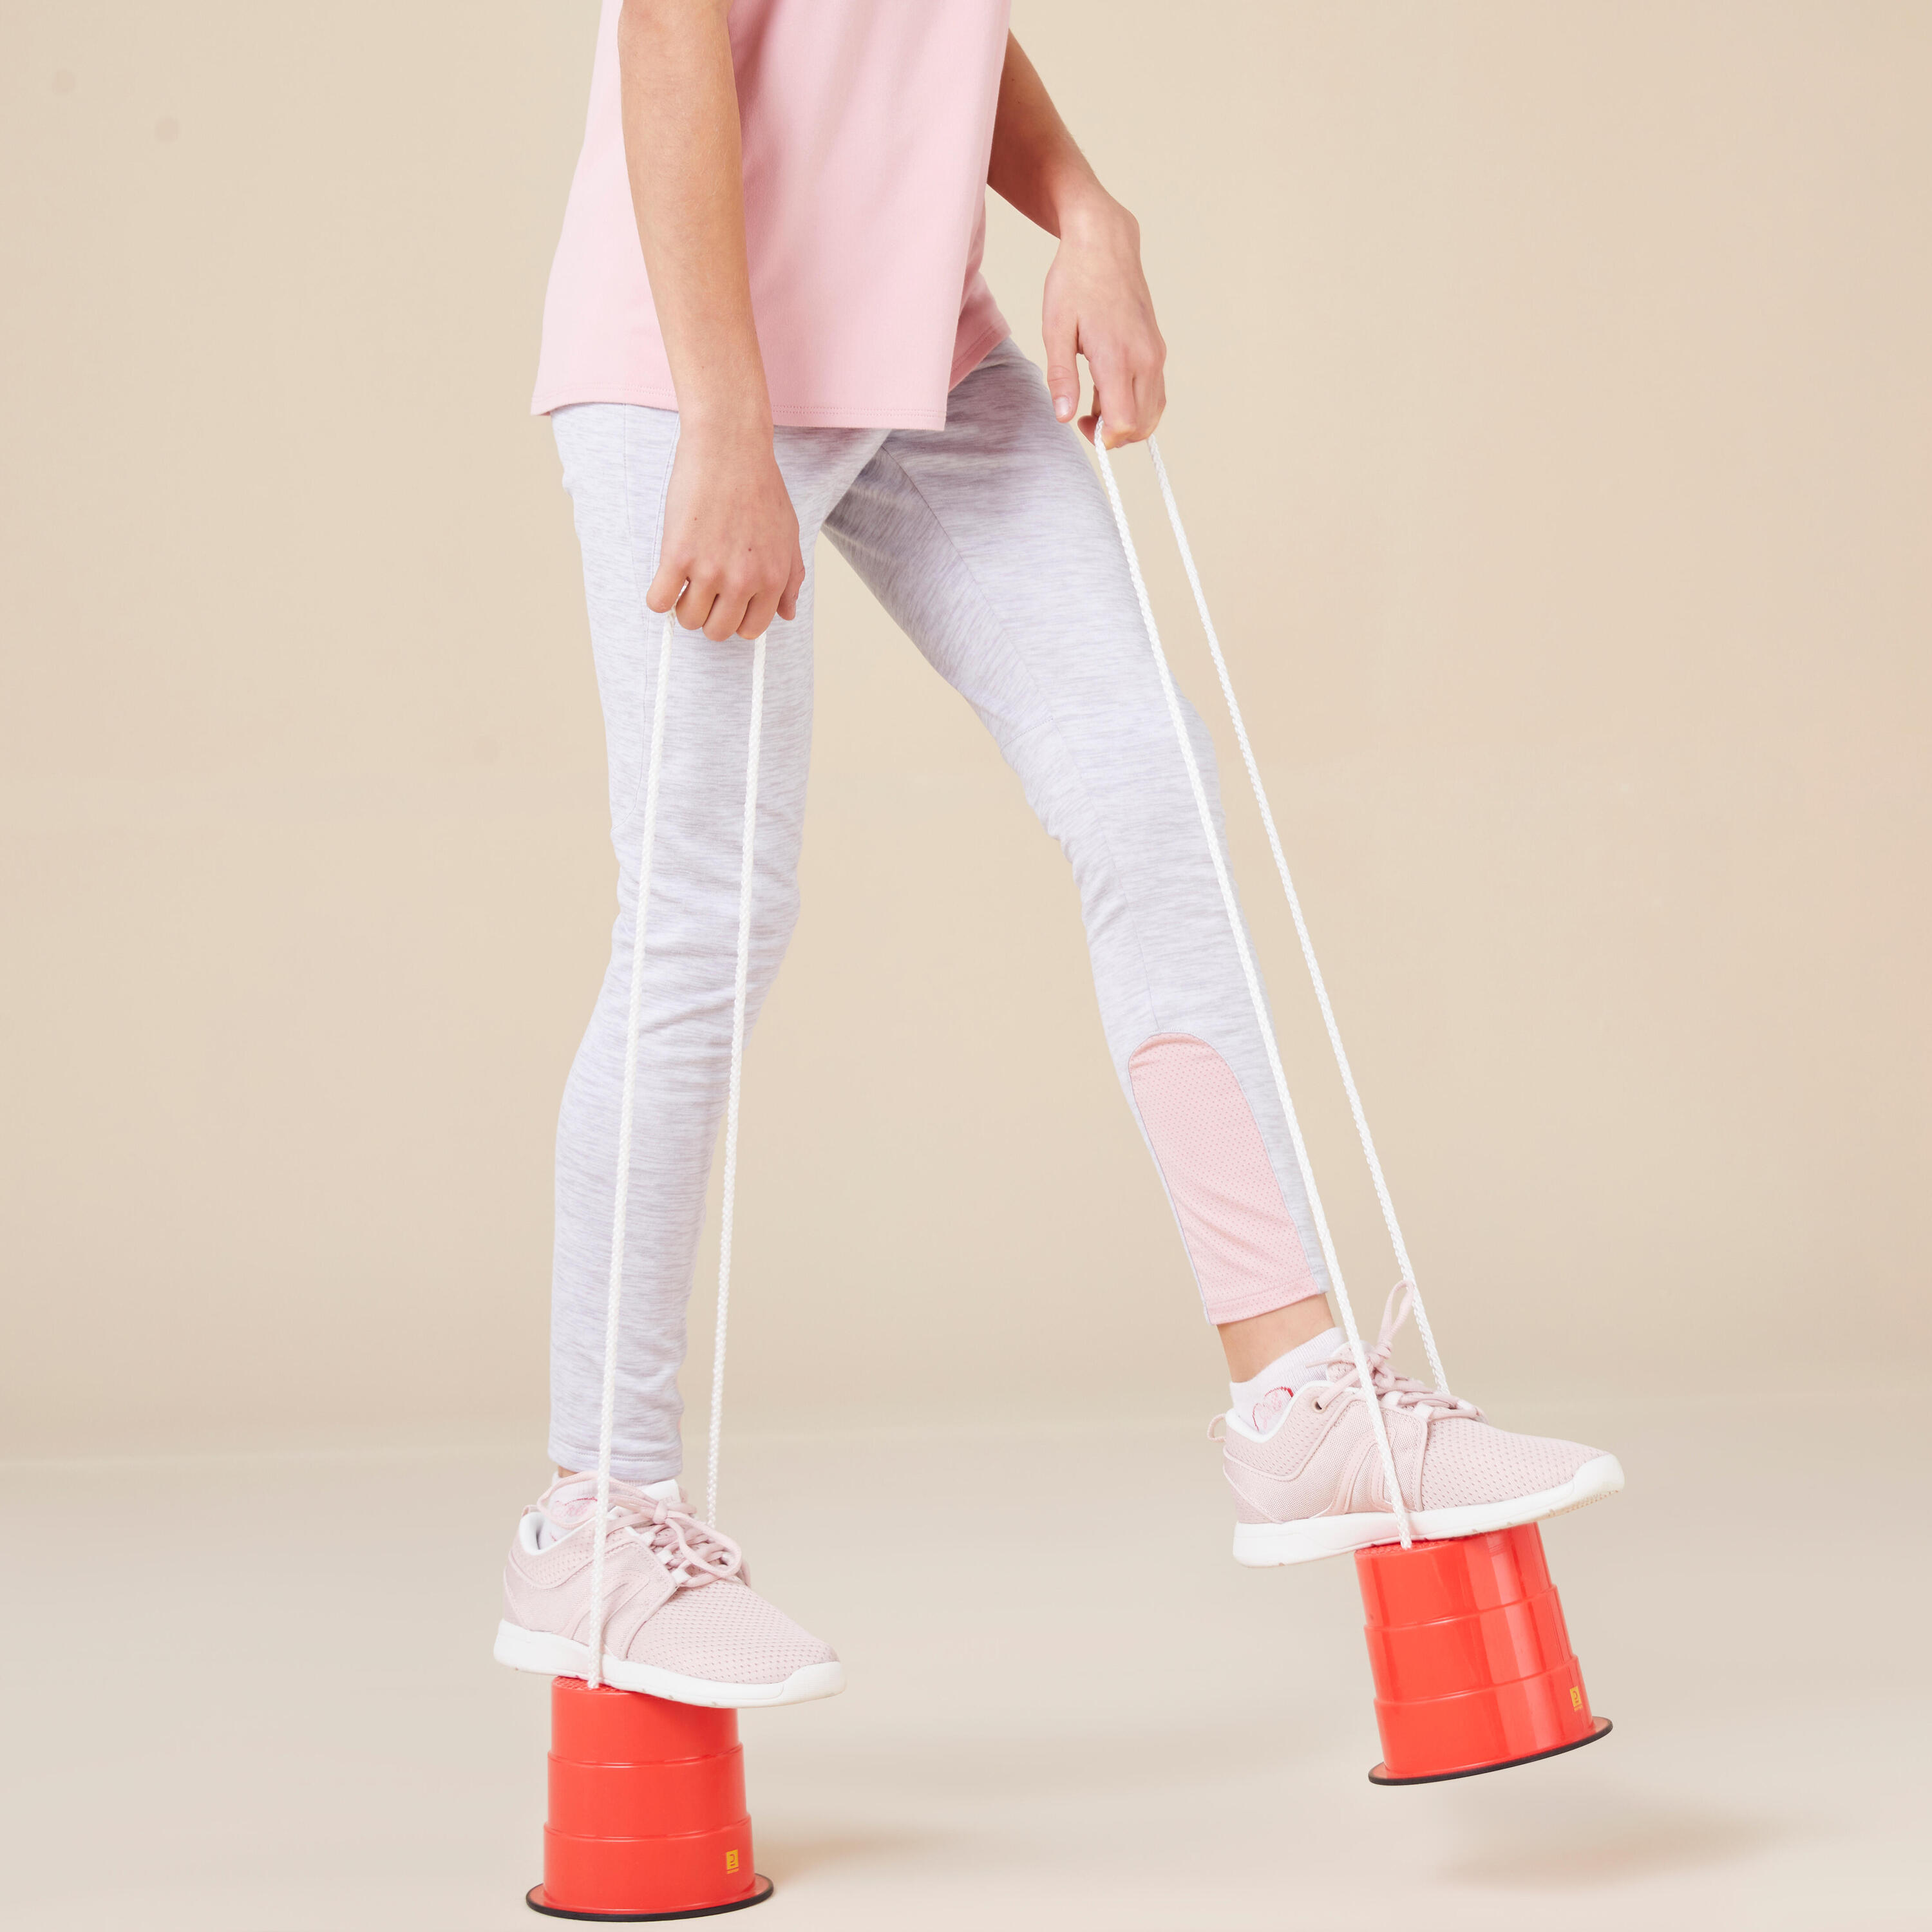 Kids' Bucket Stilts with Non-Slip Pads 4/7